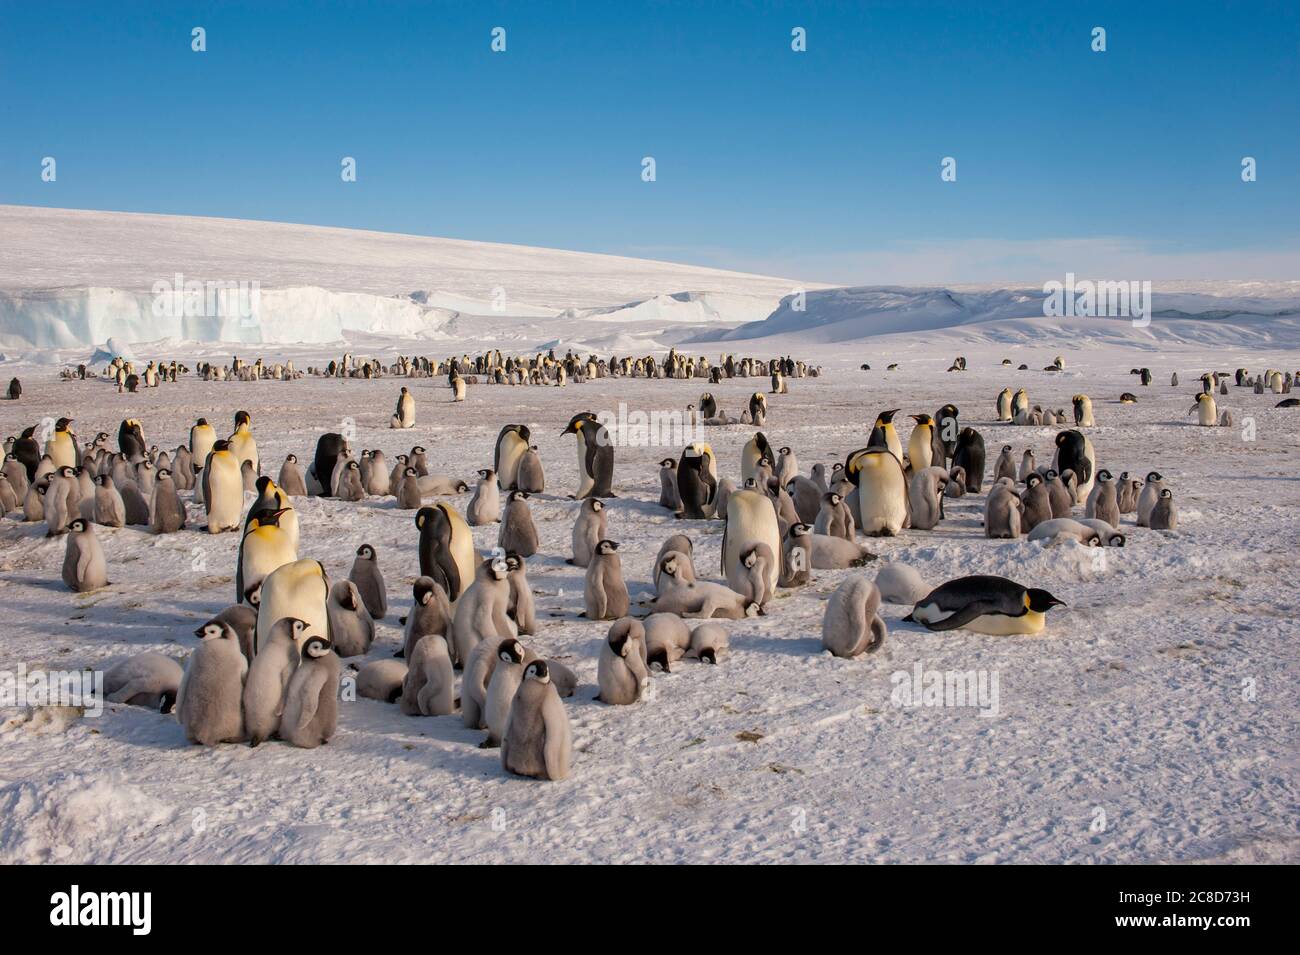 Vue d'une colonie de pingouins d'empereur (Aptenodytes forsteri) sur la glace de mer à l'île de Snow Hill dans la mer de Weddell en Antarctique. Banque D'Images